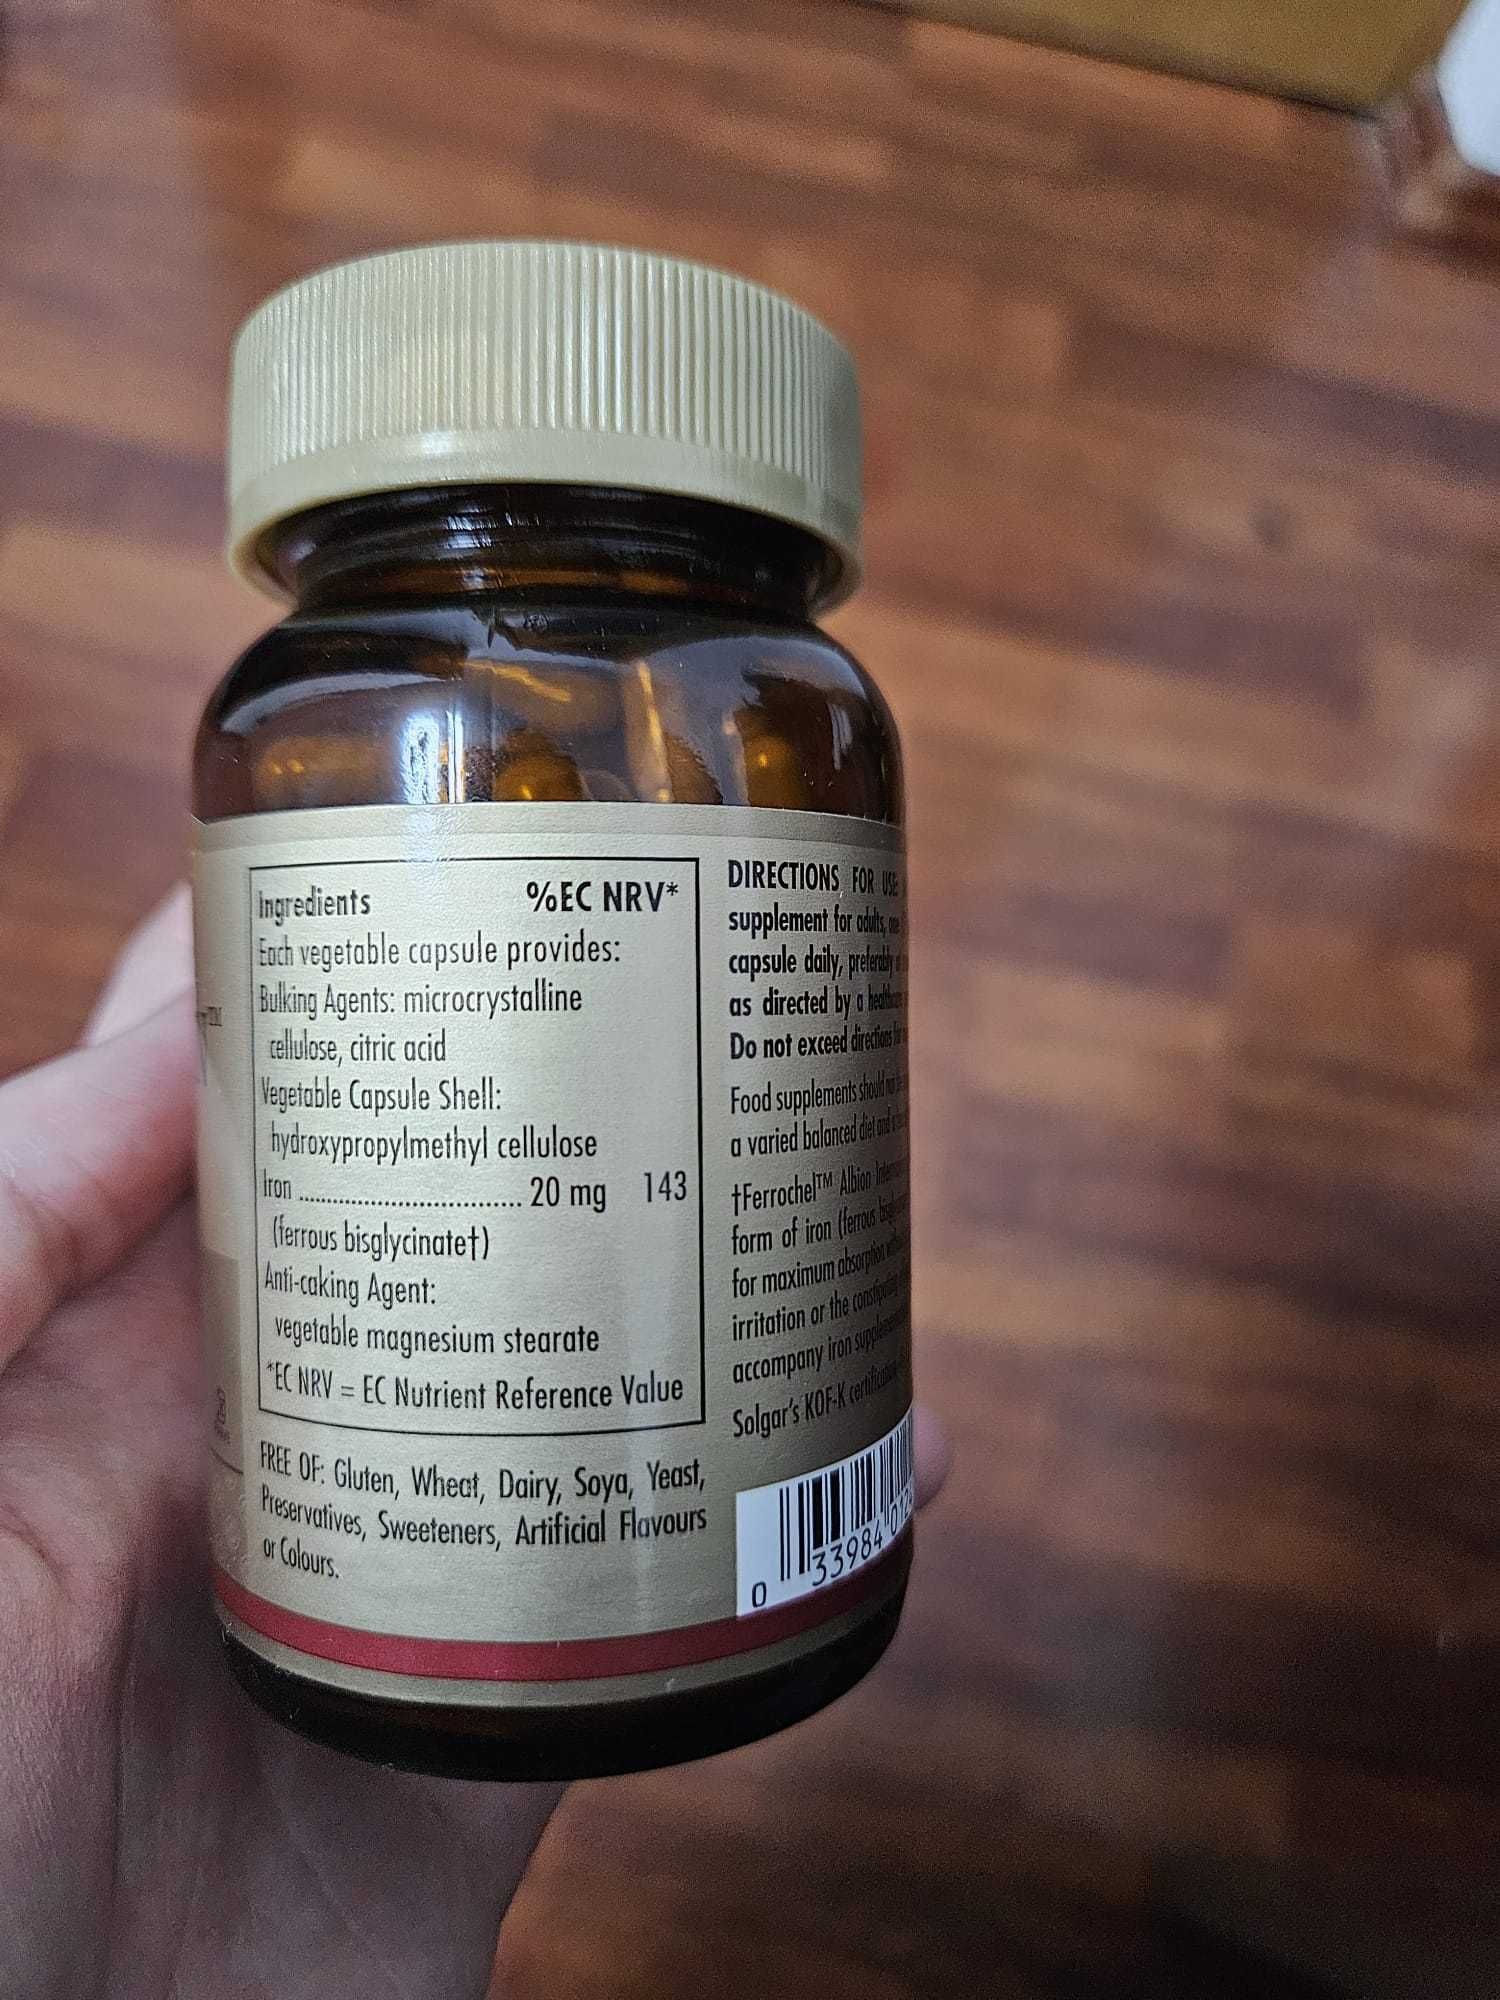 Solgar Gentle Iron - Supliment alimentar fier - 20 mg, 90 capsule